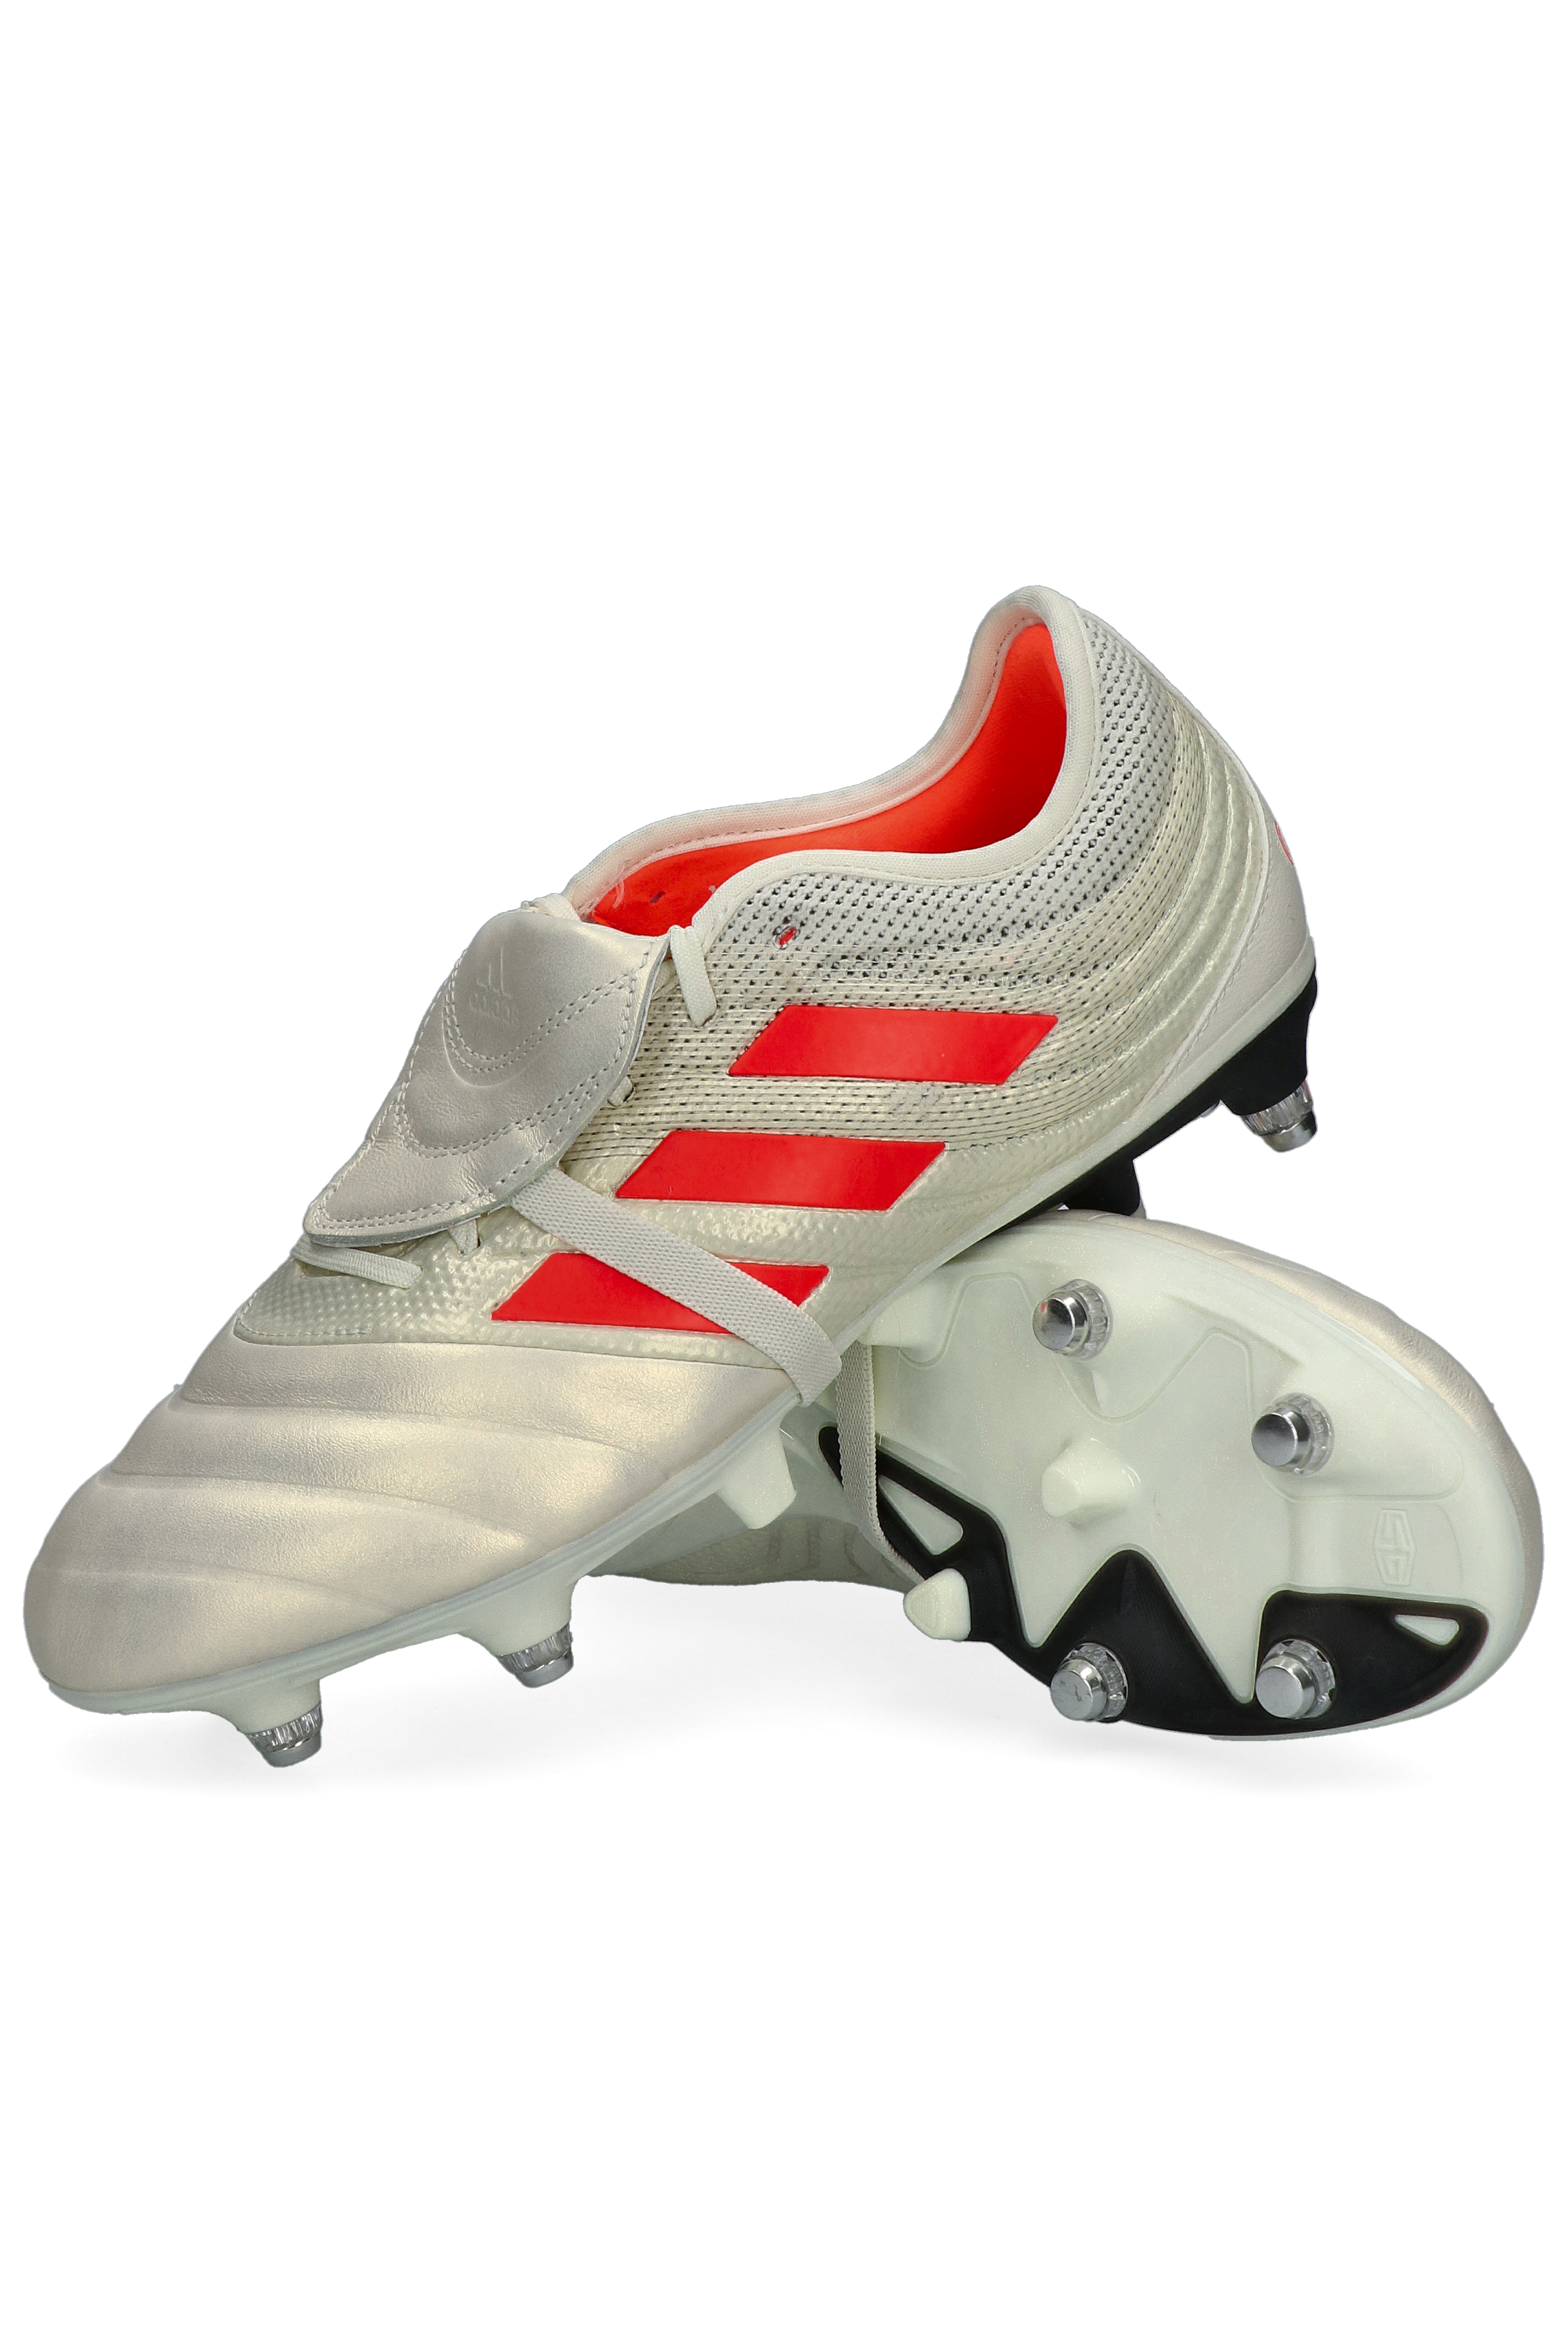 adidas Copa 19.2 R-GOL.com - boots & equipment